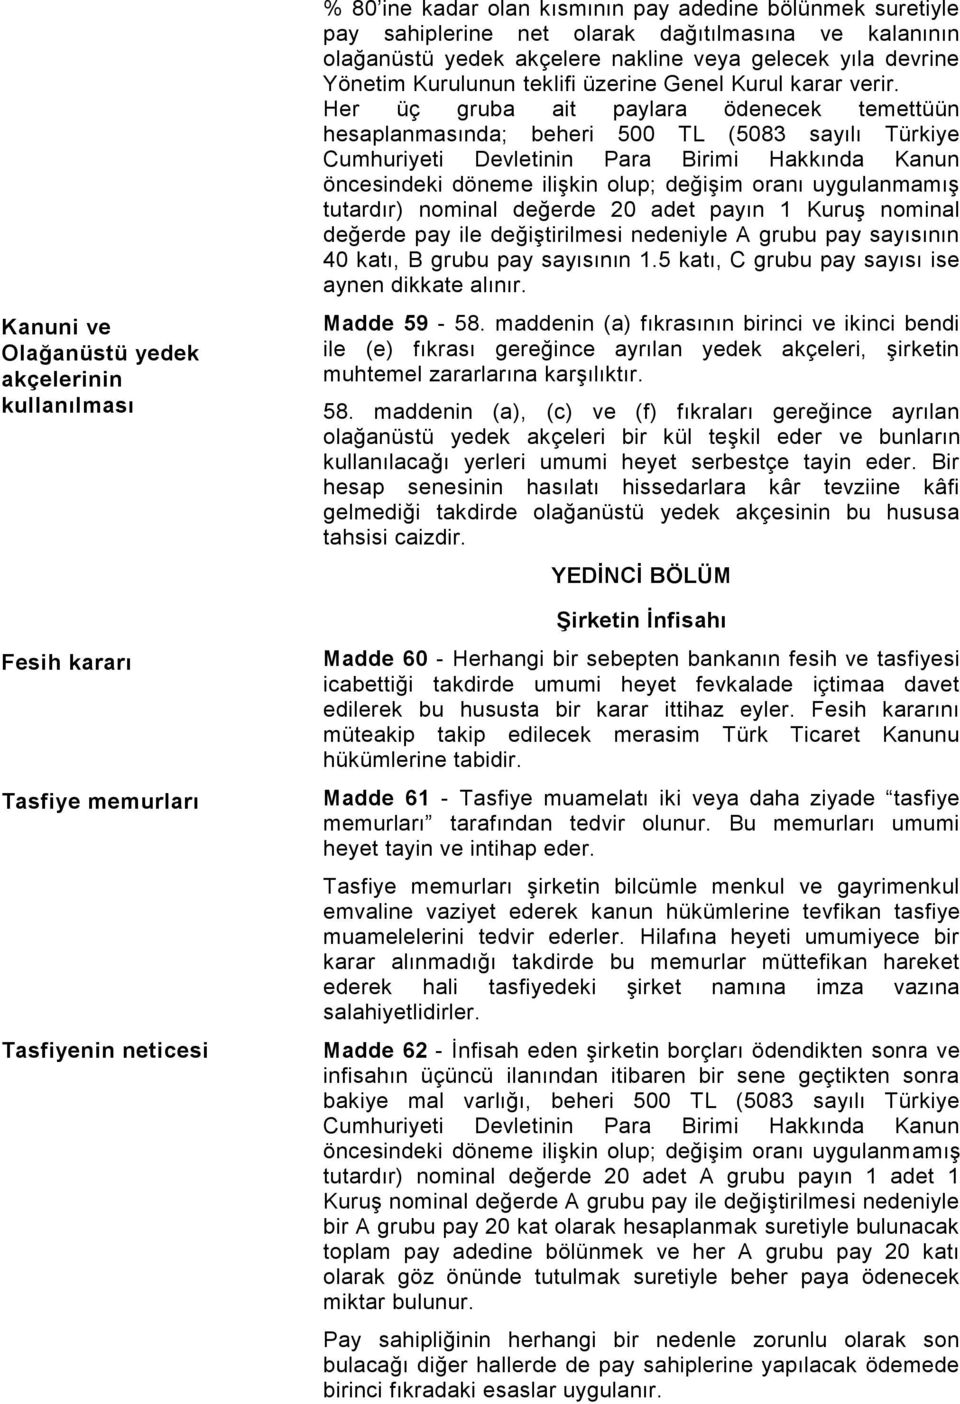 Her üç gruba ait paylara ödenecek temettüün hesaplanmasında; beheri 500 TL (5083 sayılı Türkiye Cumhuriyeti Devletinin Para Birimi Hakkında Kanun öncesindeki döneme ilişkin olup; değişim oranı